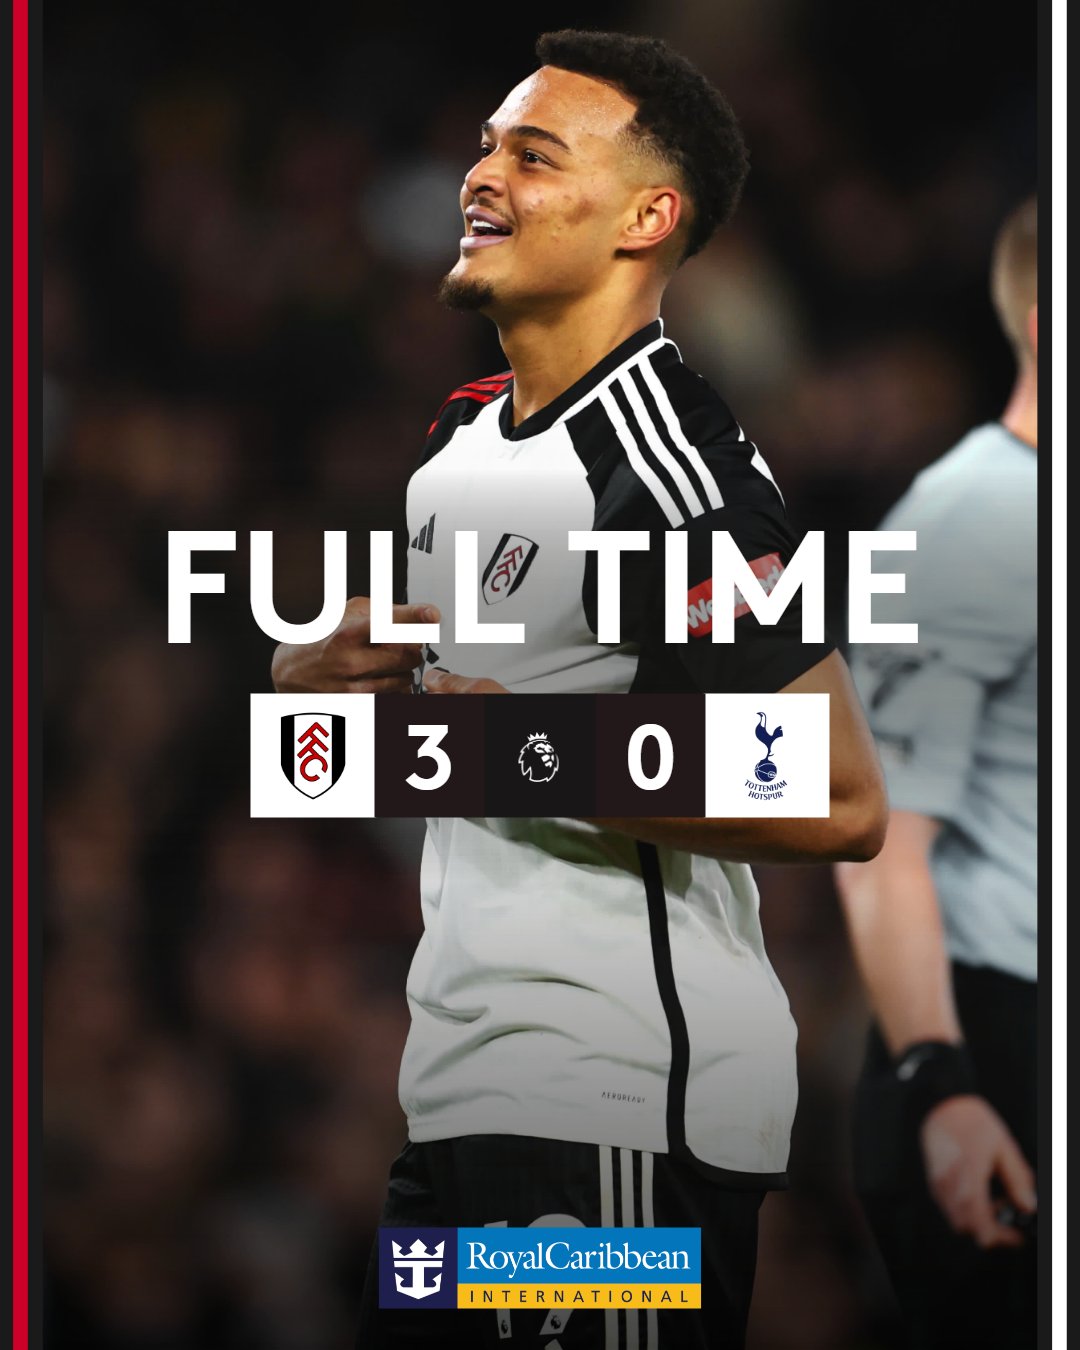 Full Time: Fulham 3-0 Tottenham Hotspur